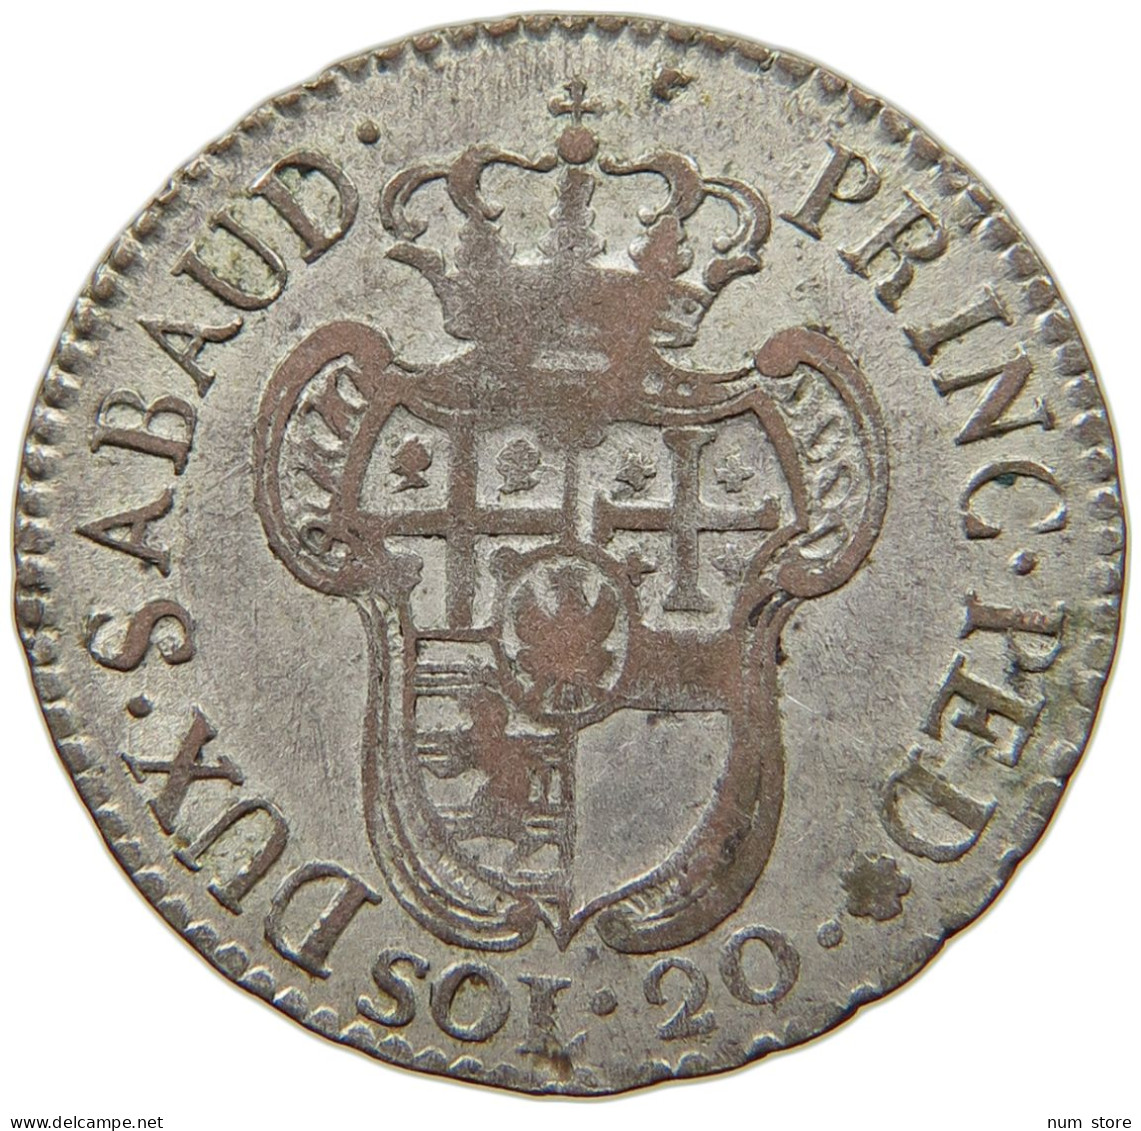 ITALIEN-SARDINIEN 20 SOLDI 1796 VITTORIO AMADEO III., 1773-1796. #MA 008541 - Piemont-Sardinien-It. Savoyen